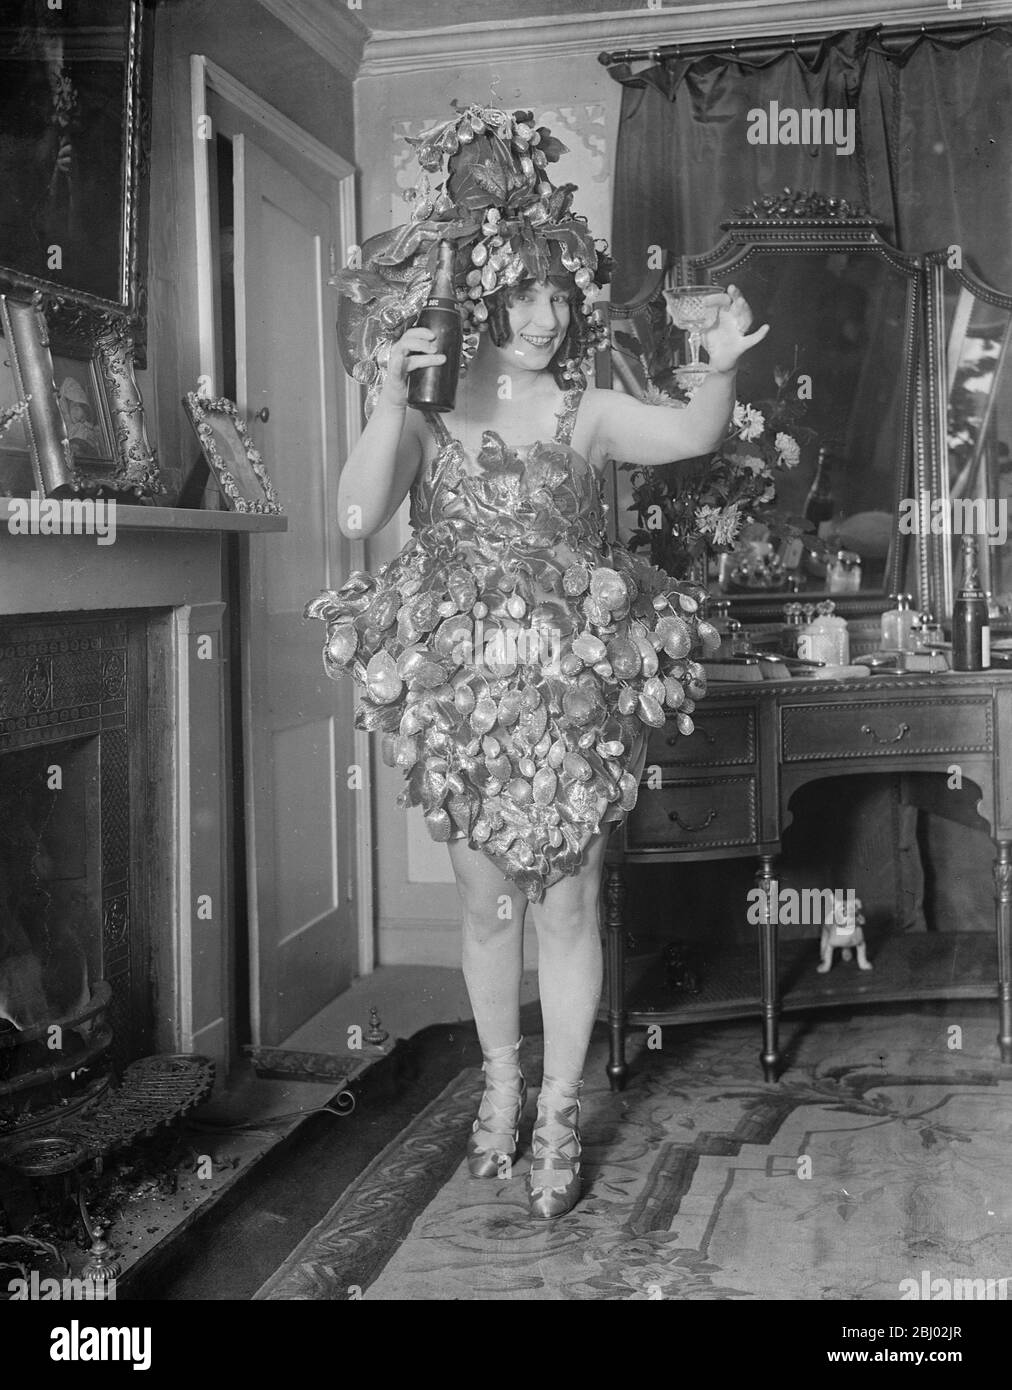 La victoire au Albert Hall - Mlle Edmee Dormeuil comme un groupe de raisins - 12 novembre 1919 Banque D'Images